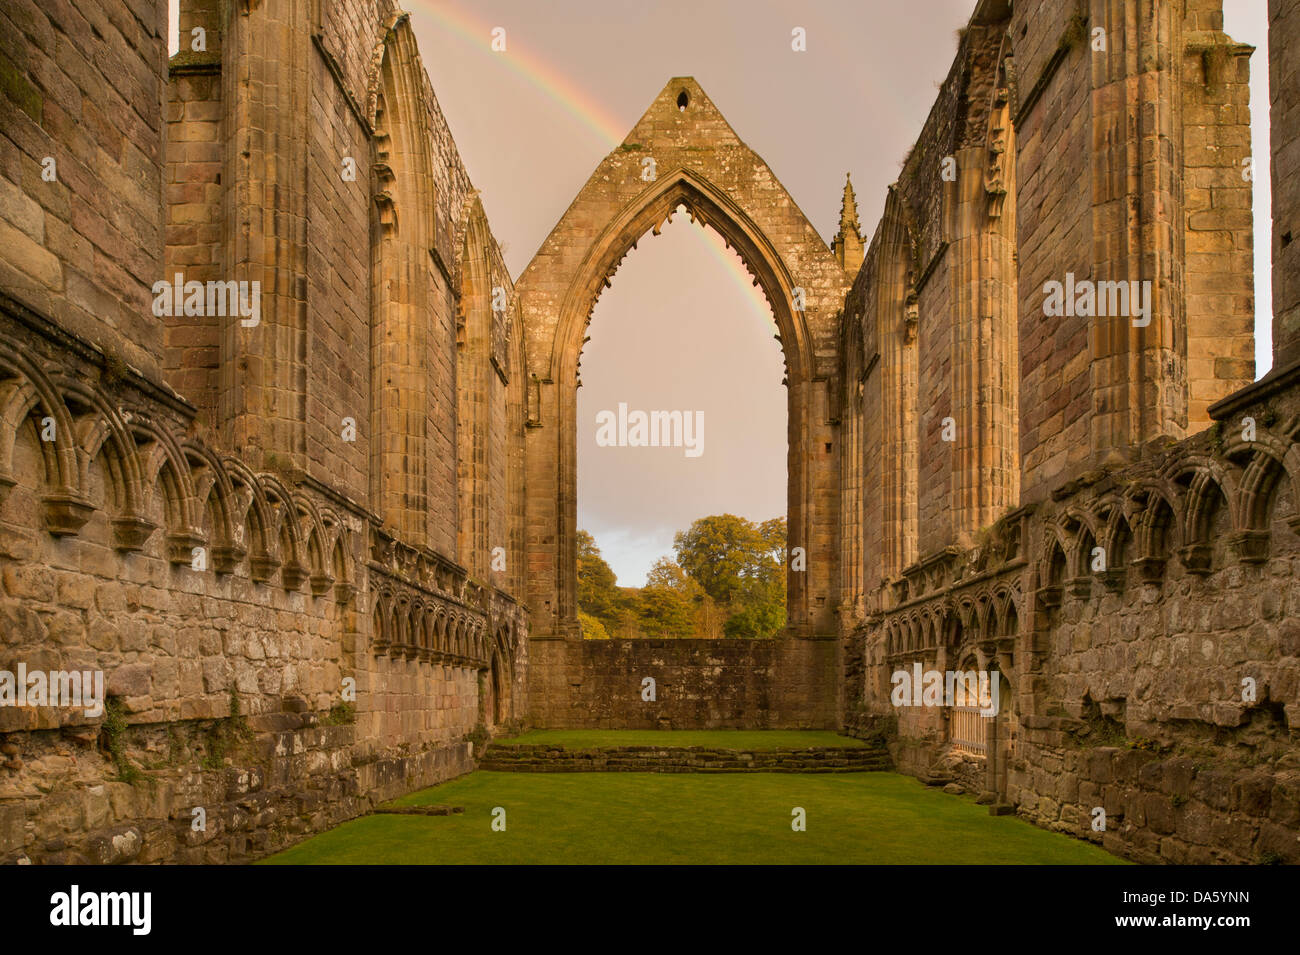 Blick auf die sonnendurchflutete, alten, malerischen monastischen Ruinen von Bolton Abbey mit Regenbogen in dunklen Himmel über ostchor Fenster - Yorkshire Dales, England, UK. Stockfoto